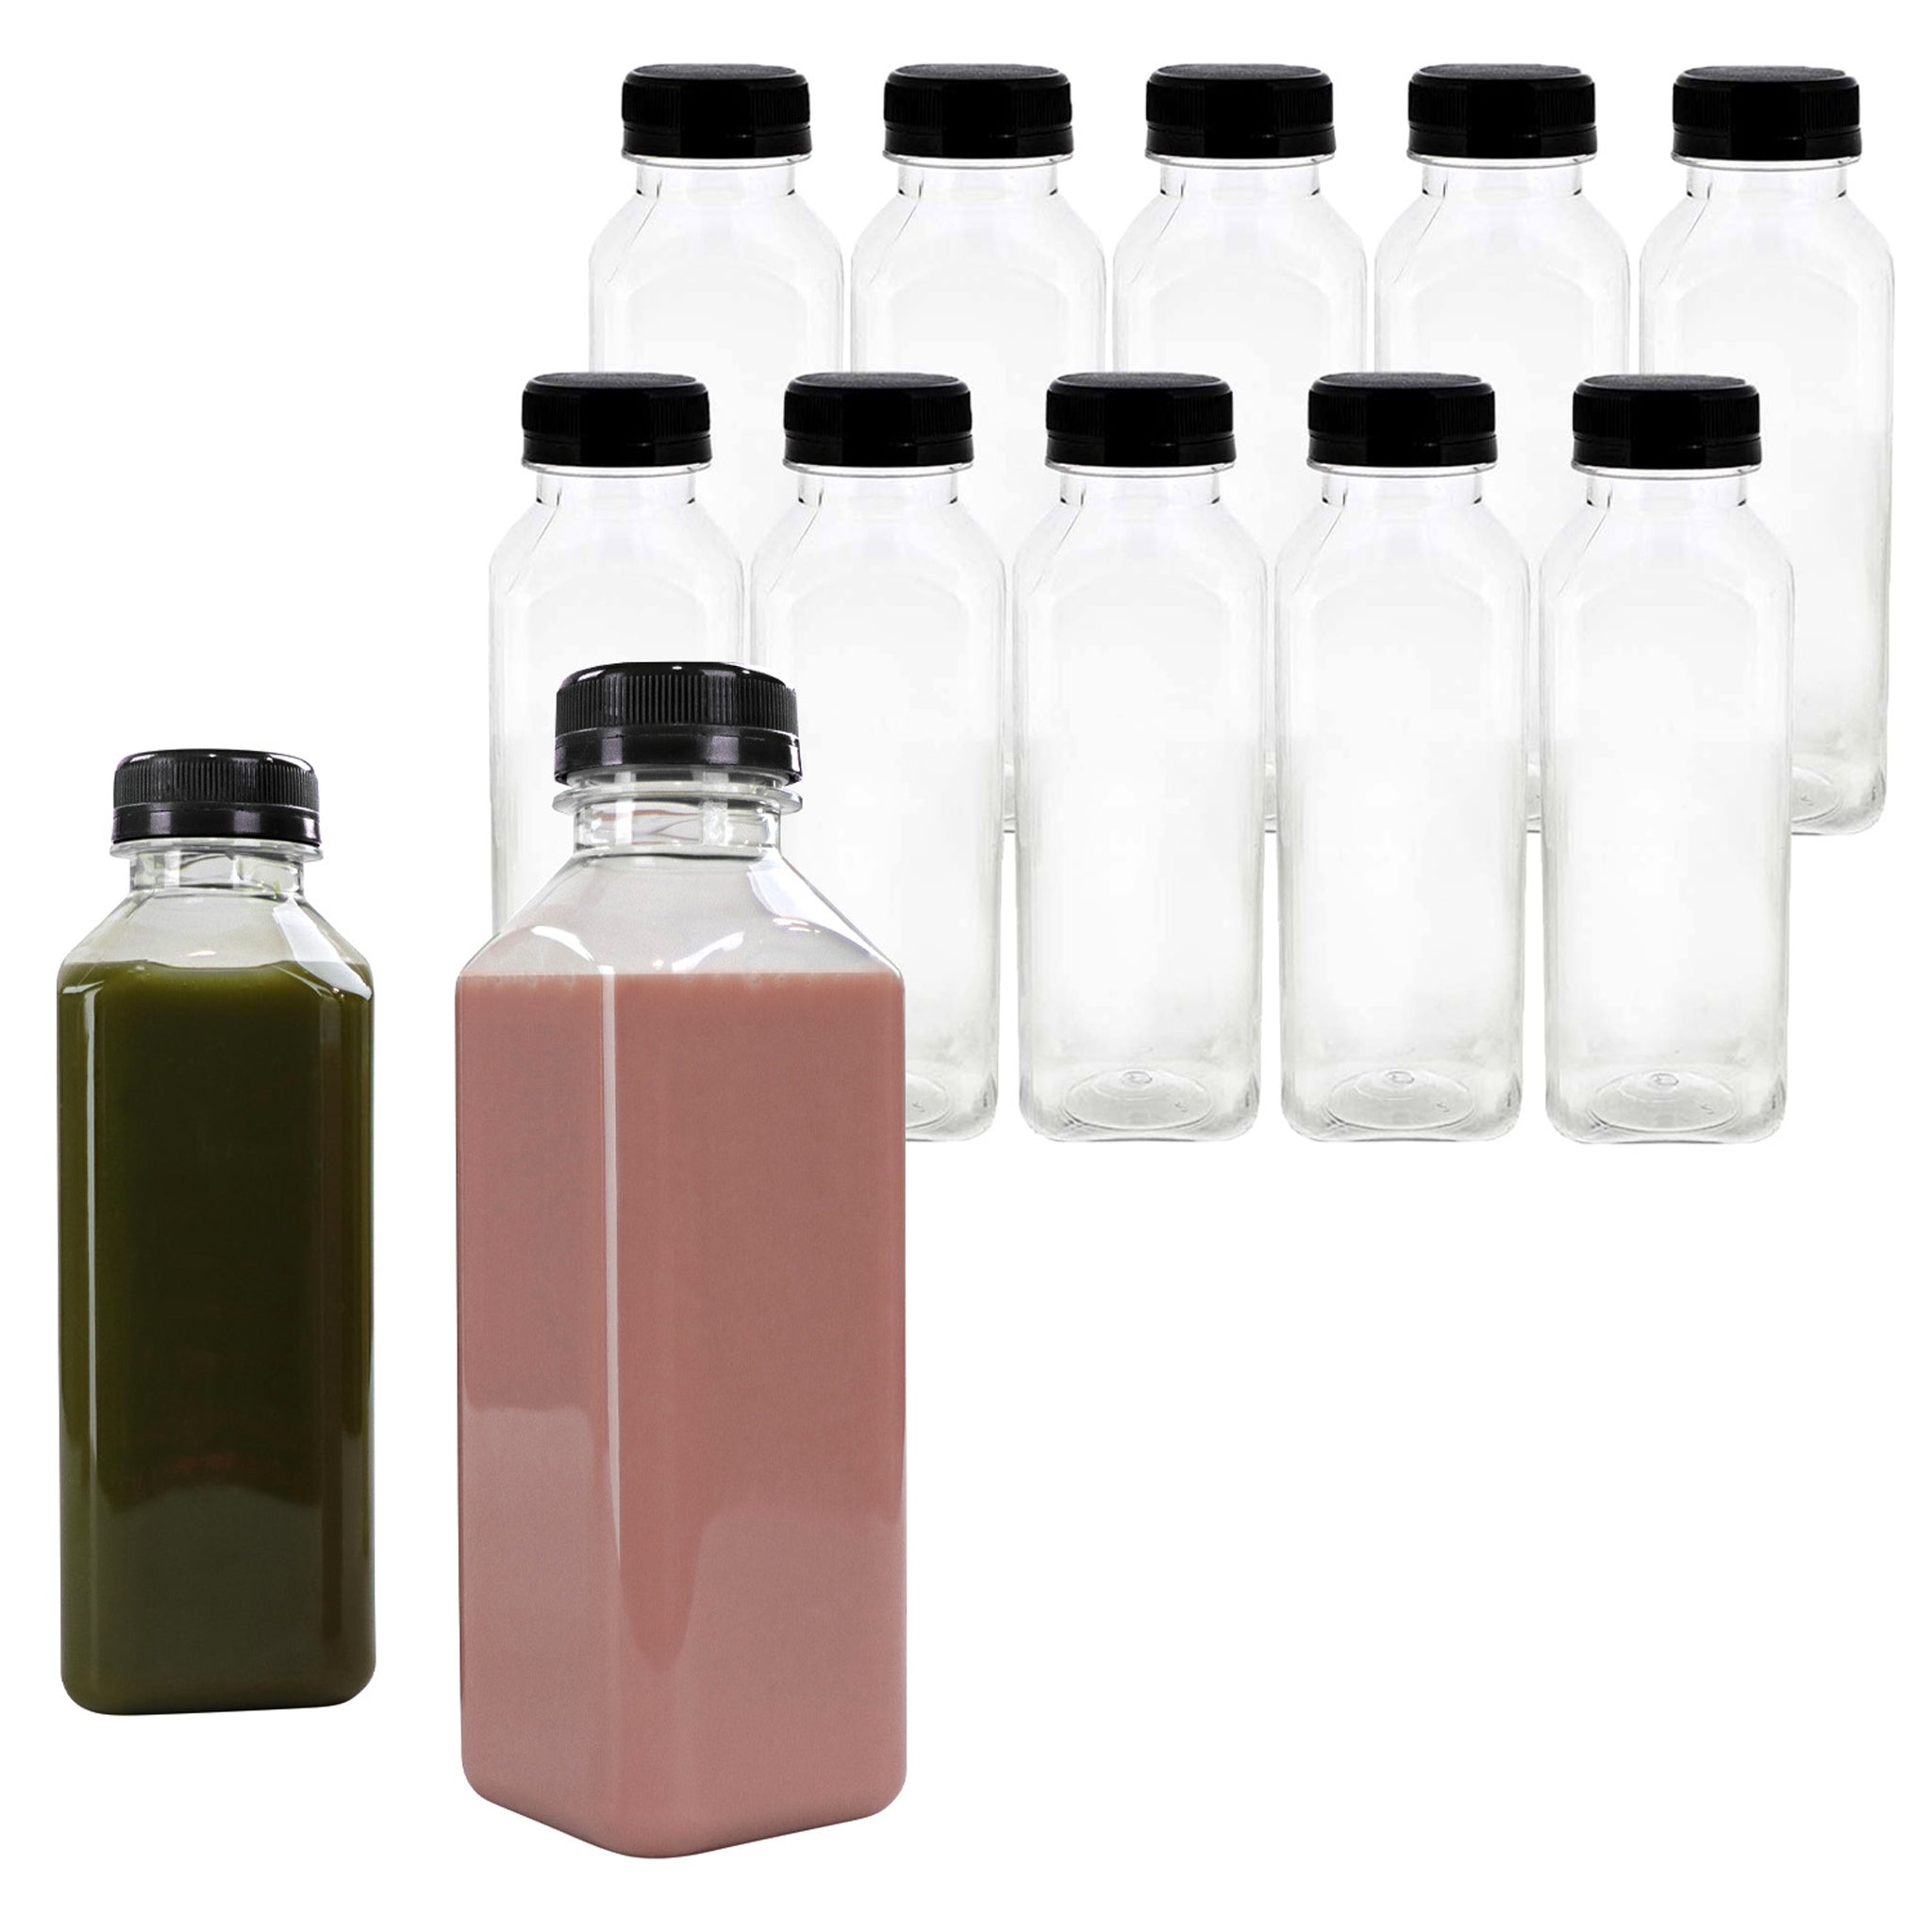 12oz Empty Clear PET Plastic Juice Bottles With Black Caps 